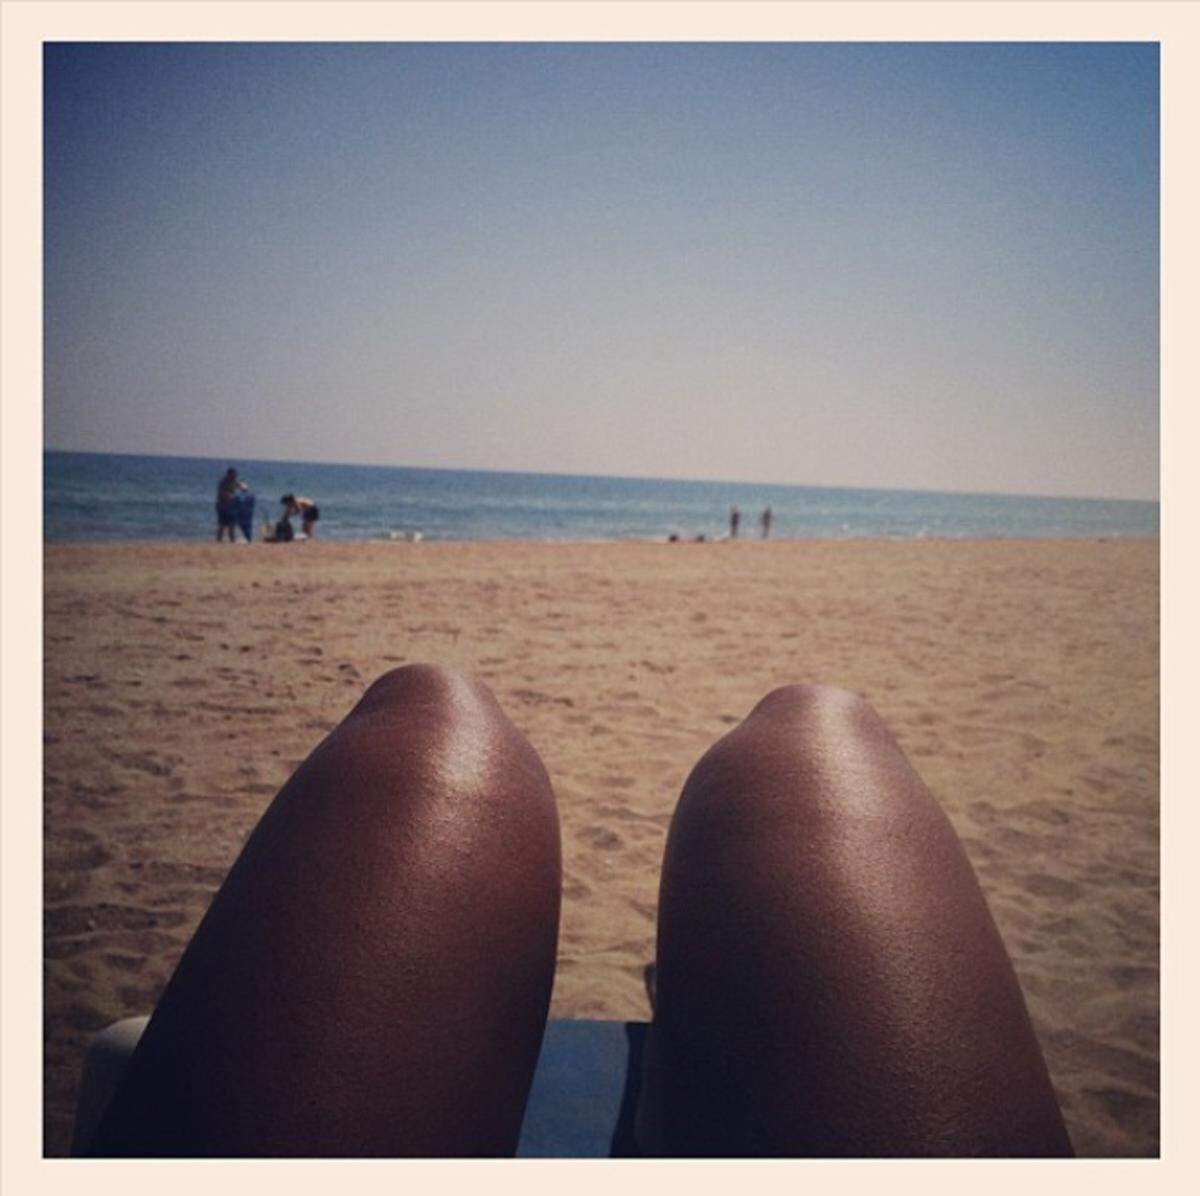 Mit von der Partie ist auch Sängerin Kelly Rowland, die den Ausblick auf den Strand genießt.